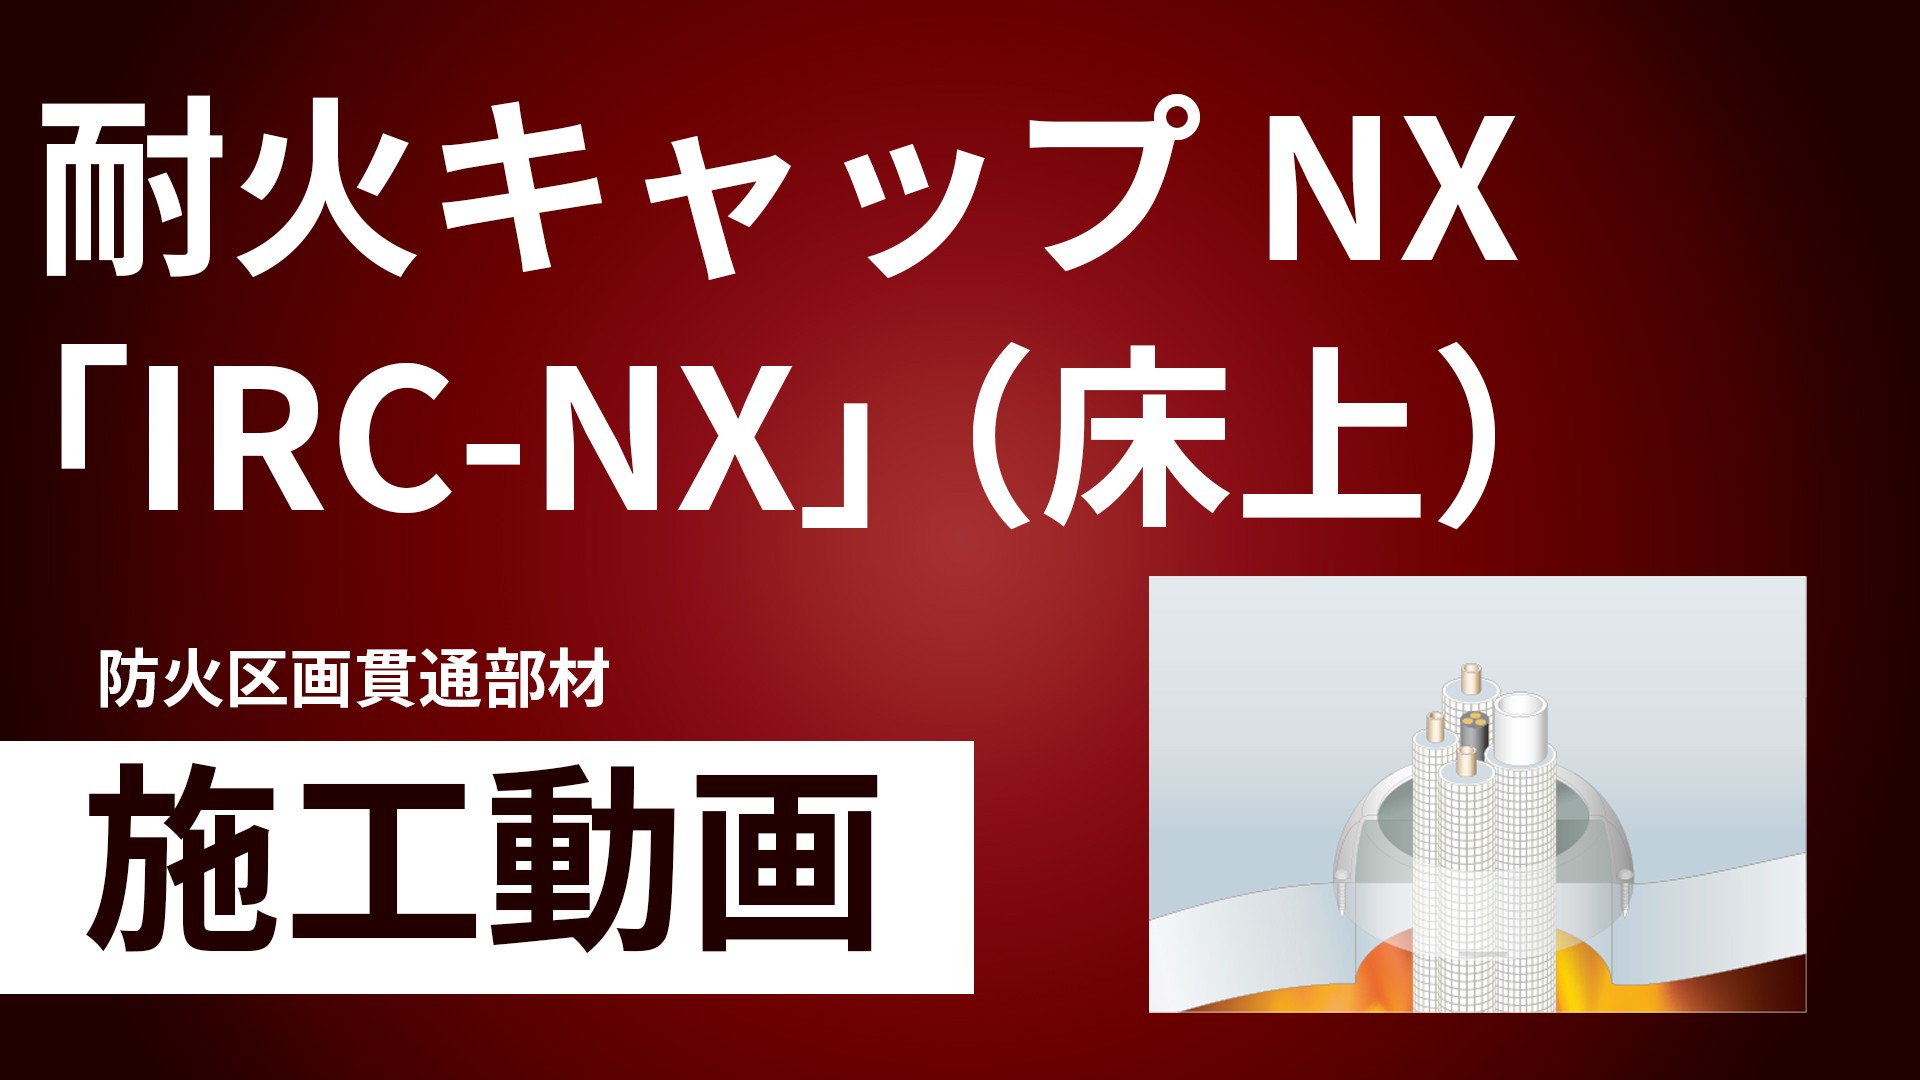 耐火キャップNX「IRC-NX」（床上）施工手順動画